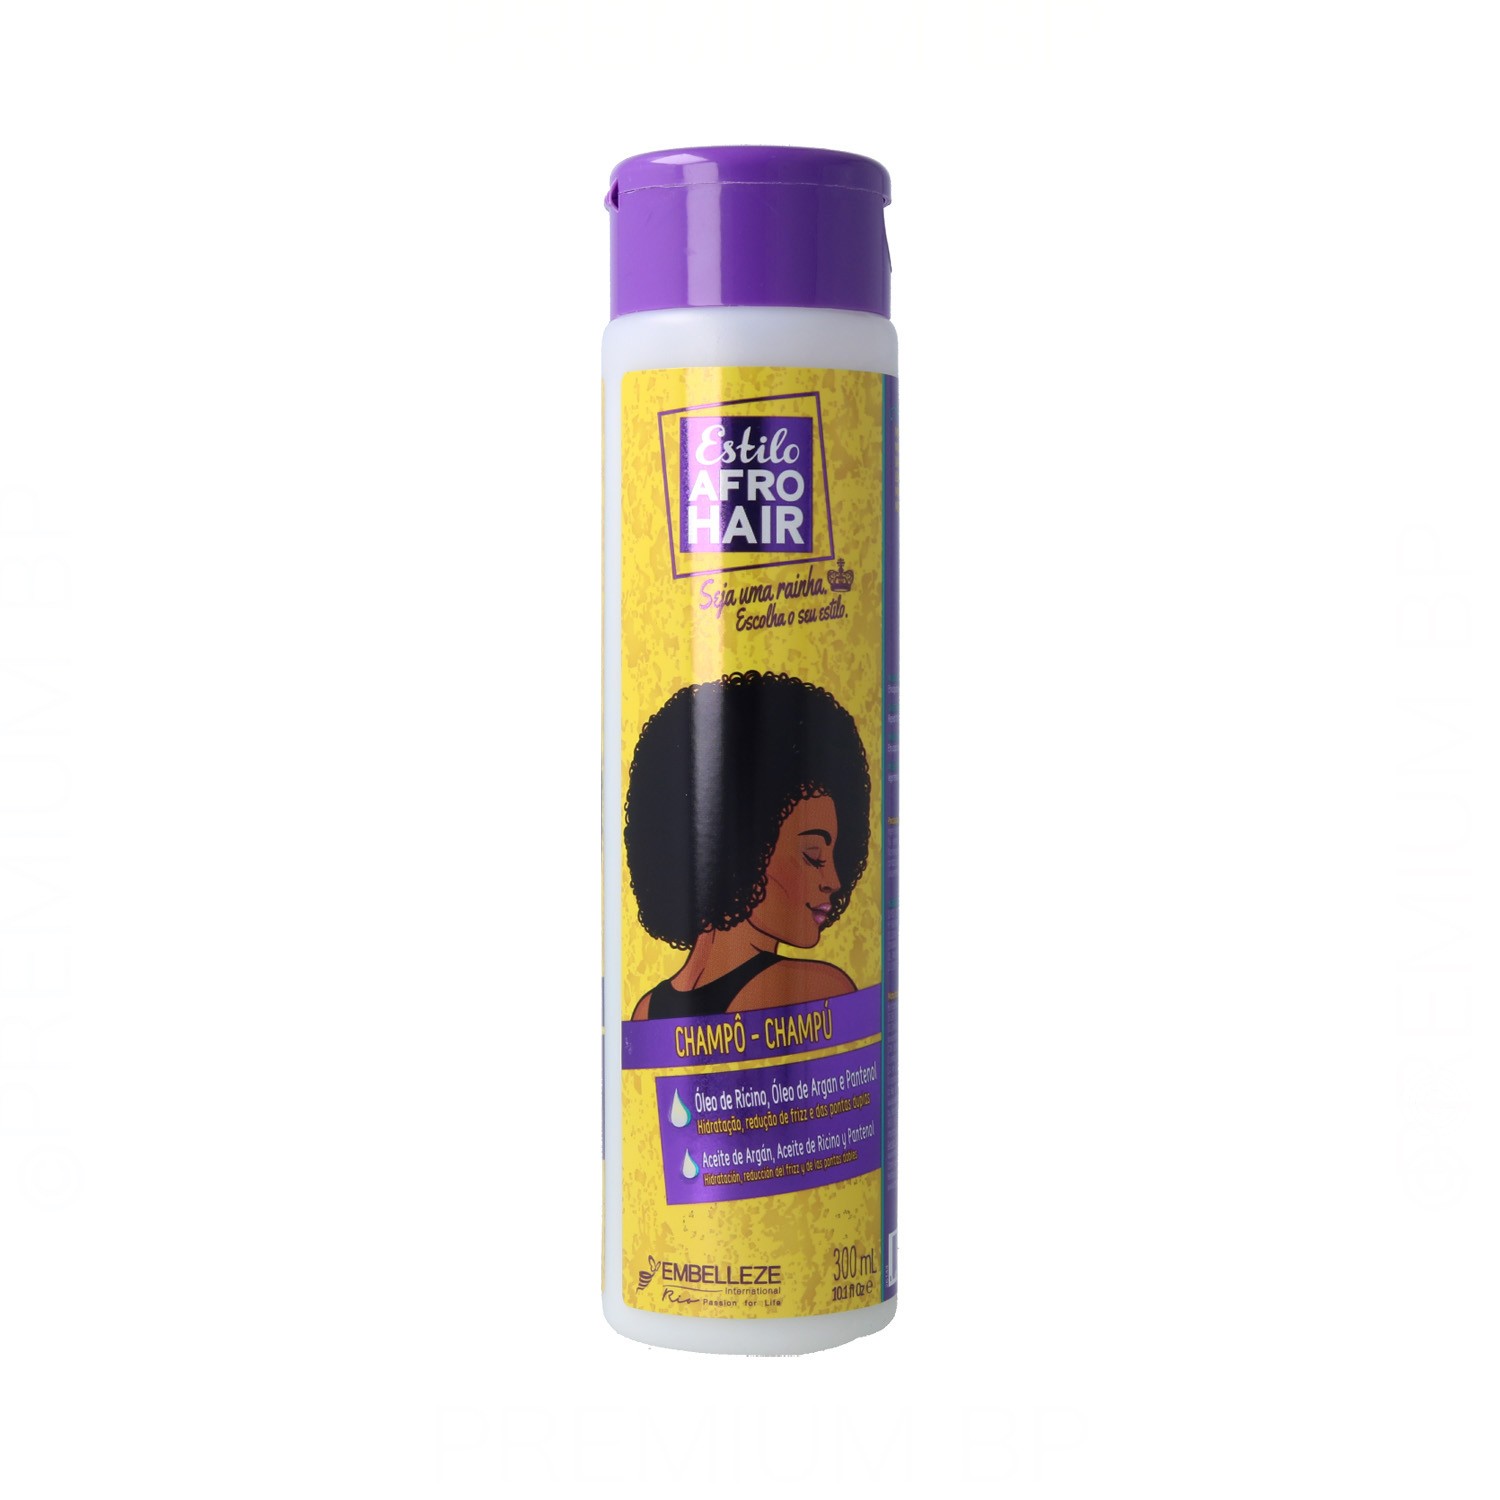 Novex Afro Hair Shampoo 300 ml